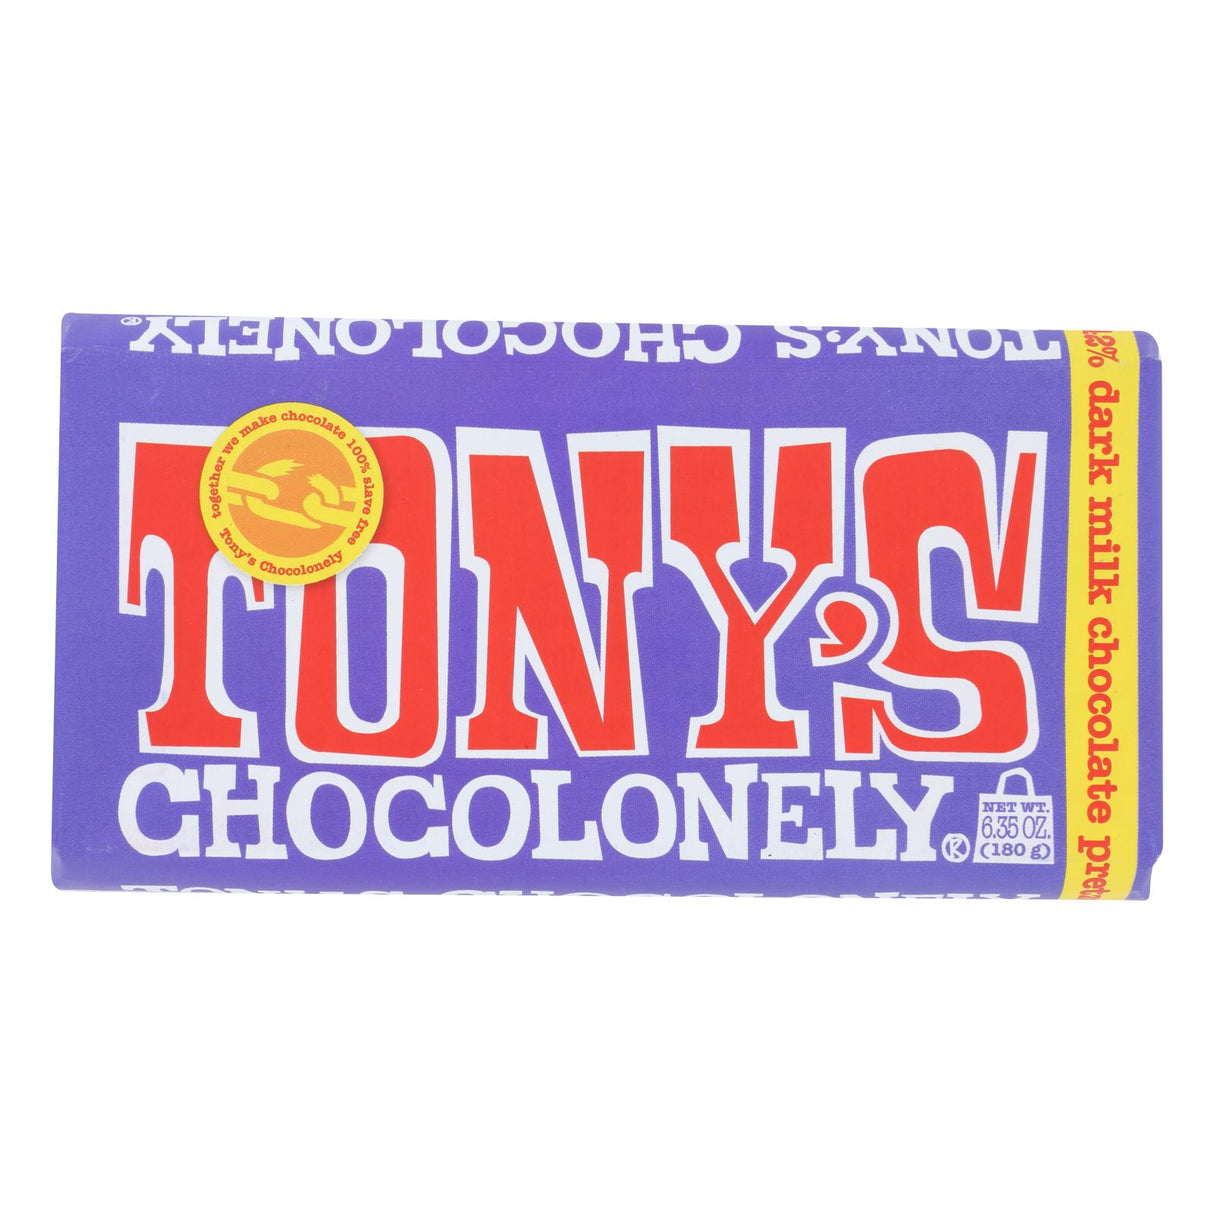 Tony's Chocolonely Dark Chocolate Bar with Pretzel Toffee - 6.35 oz - Case of 15 - Cozy Farm 